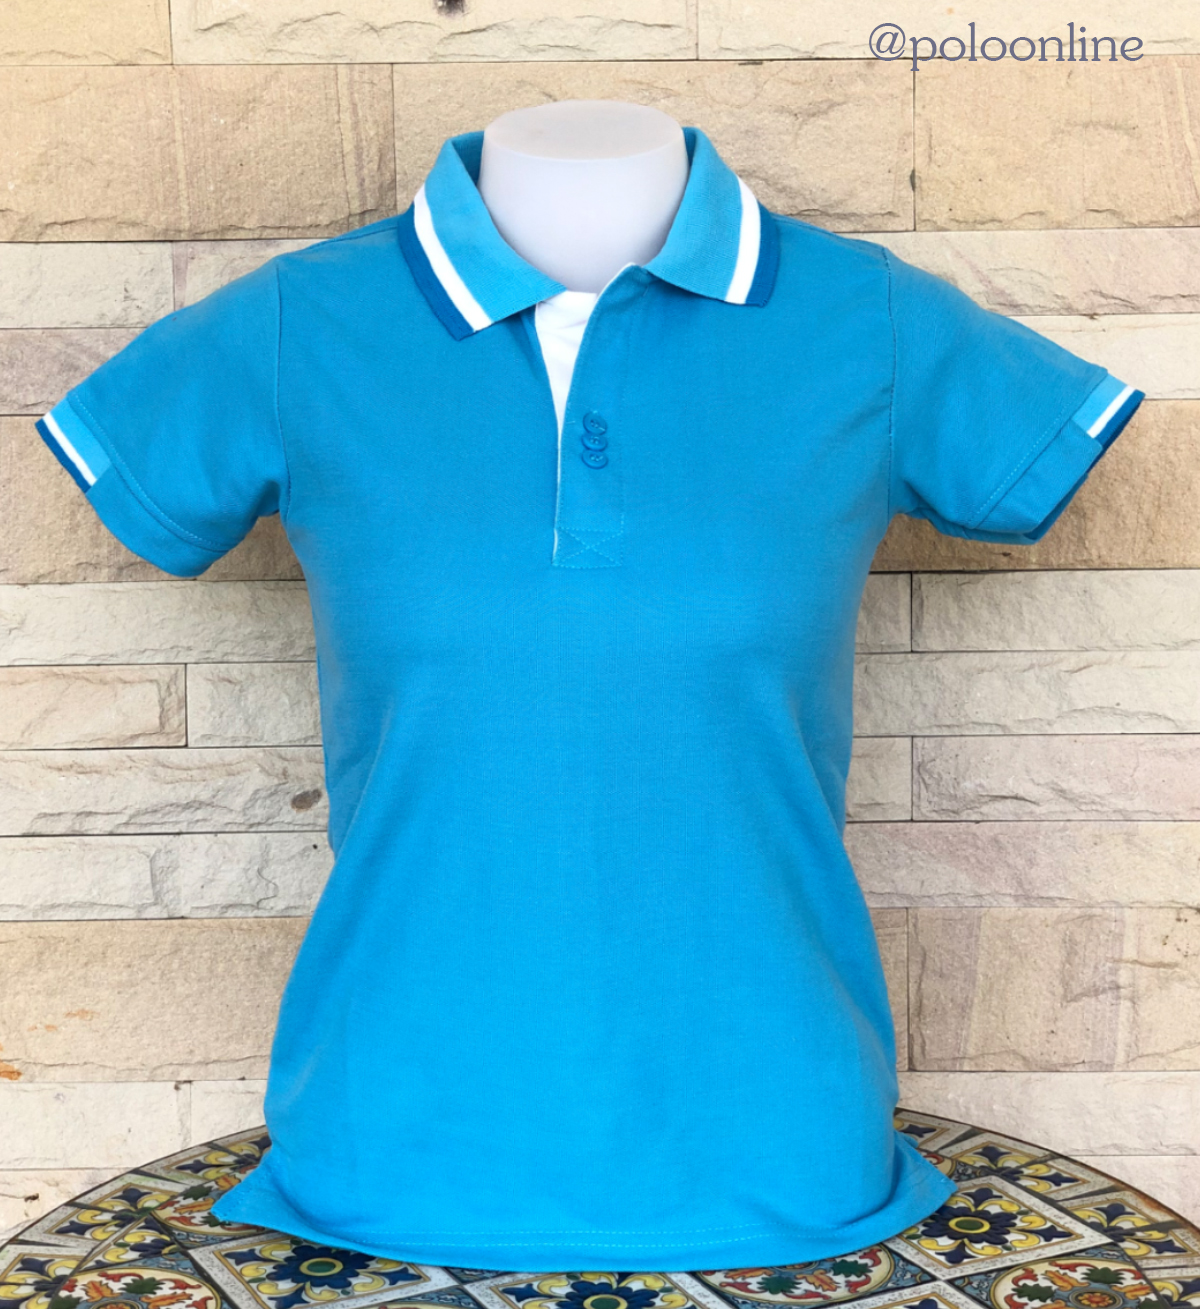 เสื้อโปโล Polo Shirt Plain Polo T Shirt Soft Pique Short Sleeve Tops For Men Side Vents สีฟ้า ปกขลิปขาว เนื้อผ้านุ่ม สวมใส่สบาย ซึ่งมีทั้งแบบชาย และแบบผู้หญิง